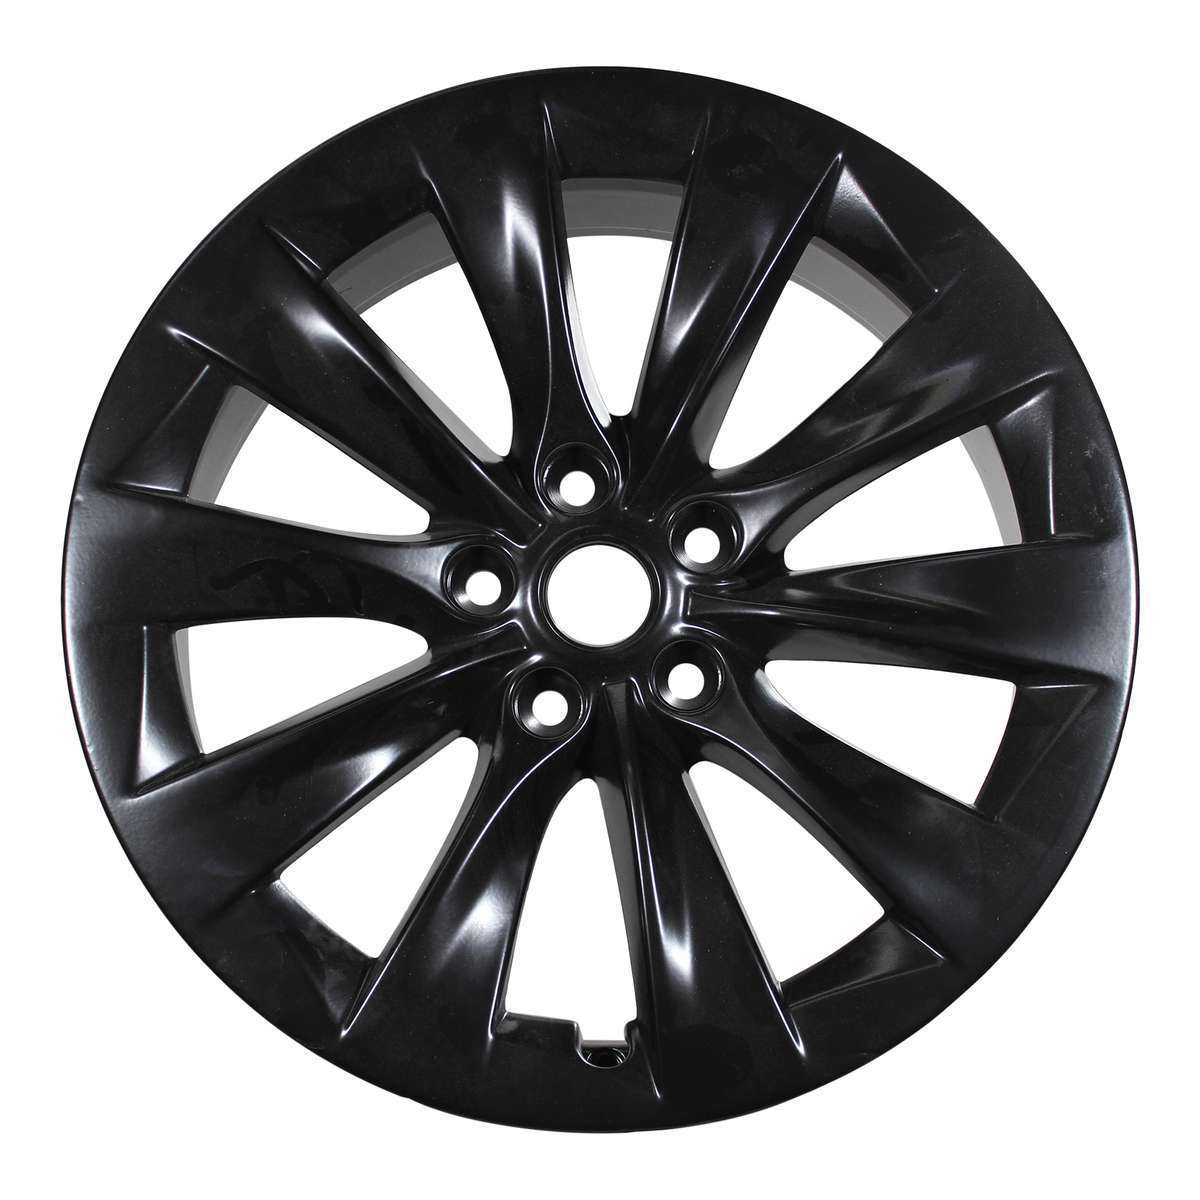 2013 Tesla Model S 19" OEM Wheel Rim Slipstream Black W97755B